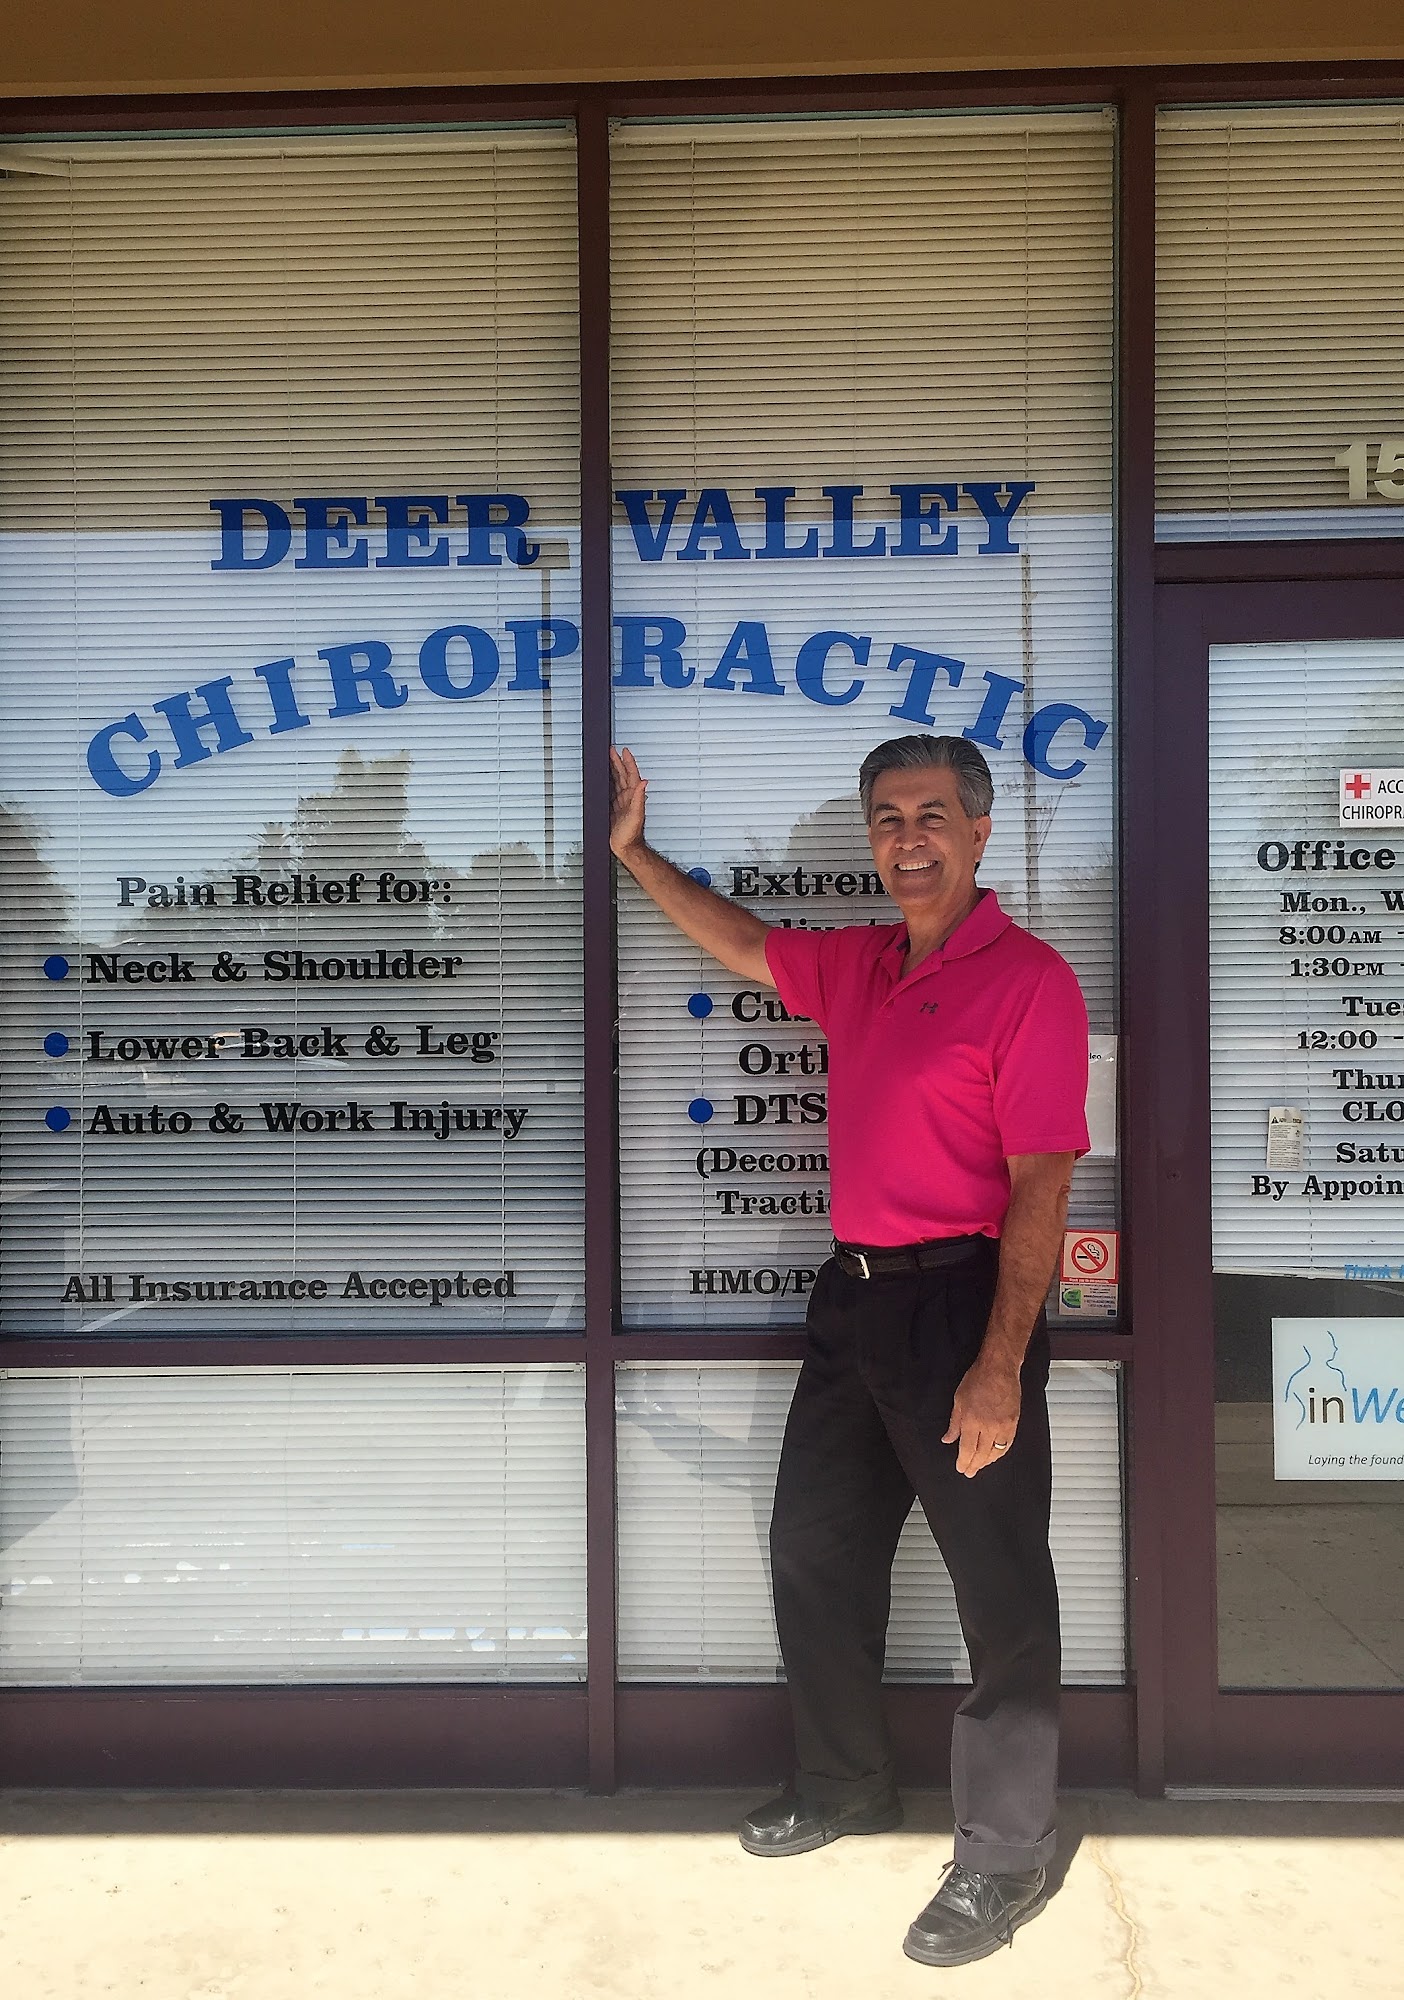 Deer Valley Chiropractic